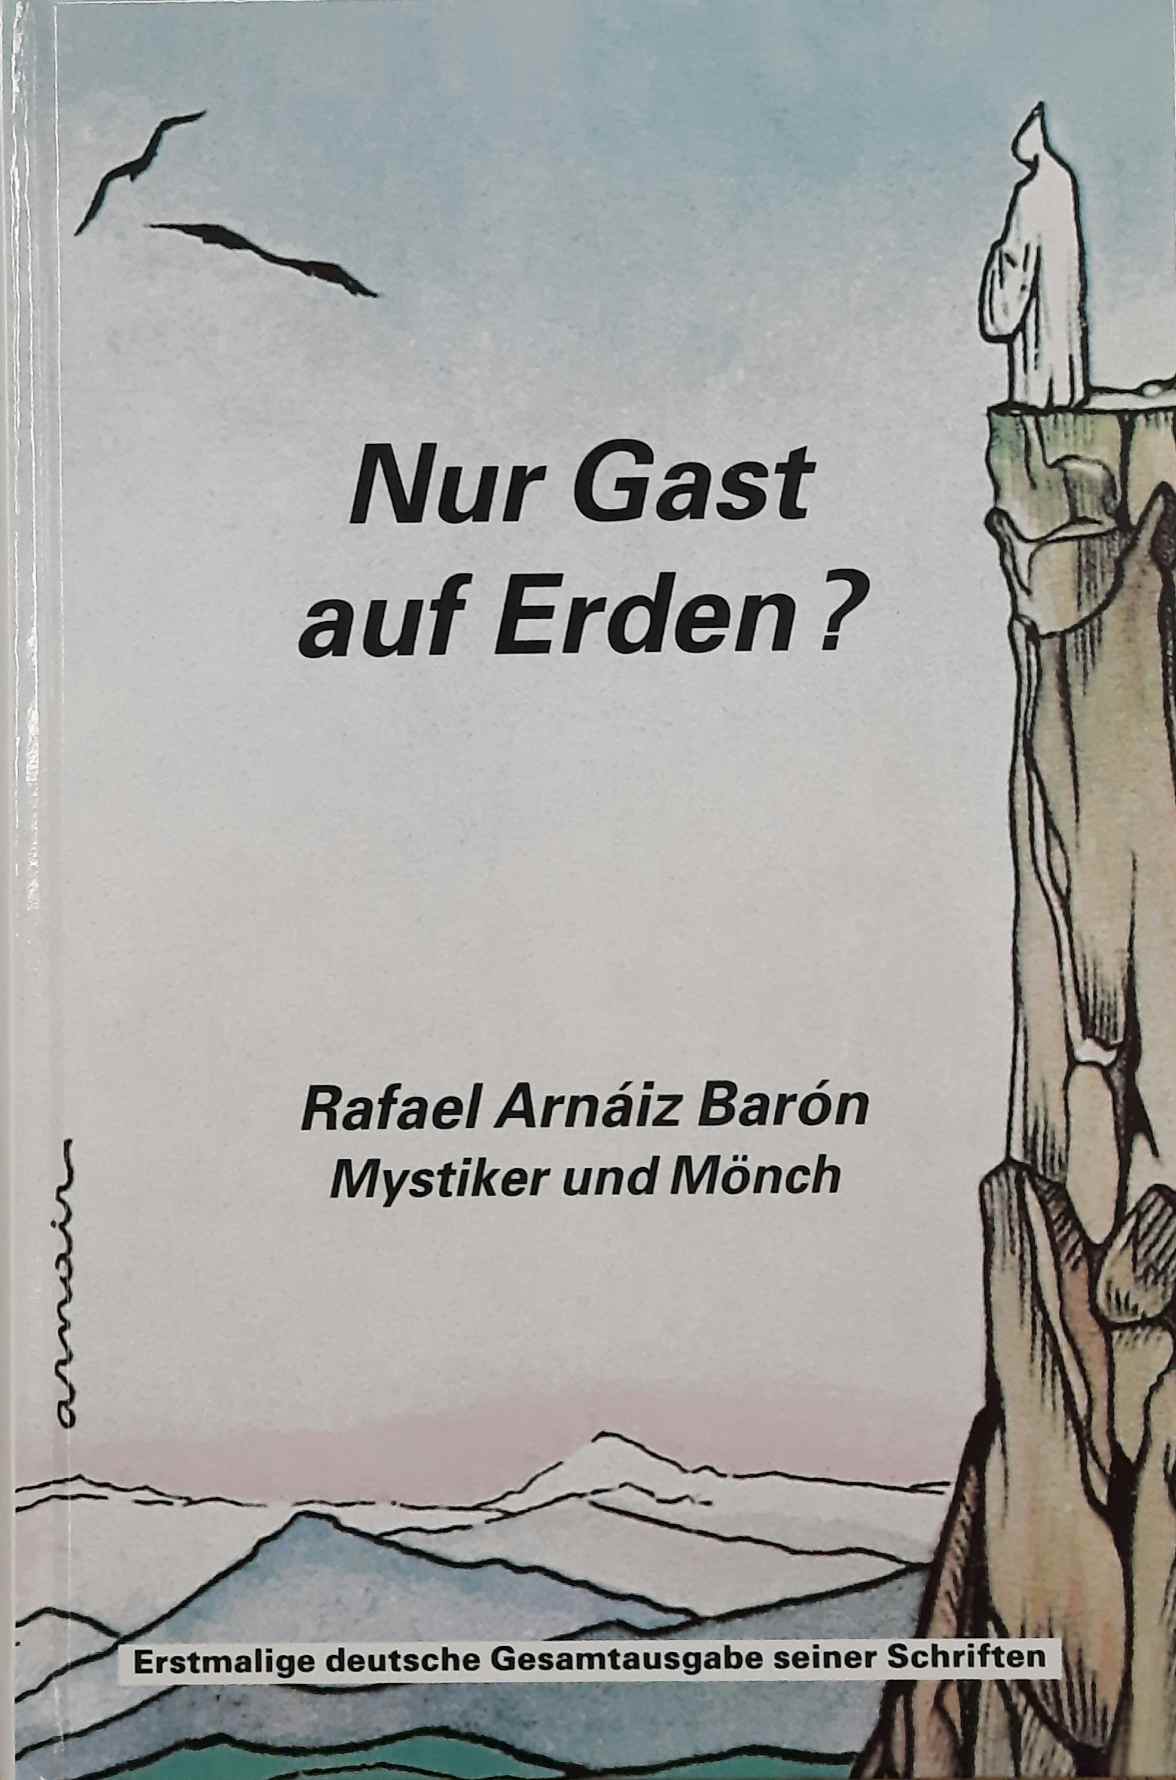  - Nur Gast auf Erden? Rafael Arnaiz Baron. Mystiker und Mnch. Erstmalige deutsche Gesamtausgabe seiner Schriften.